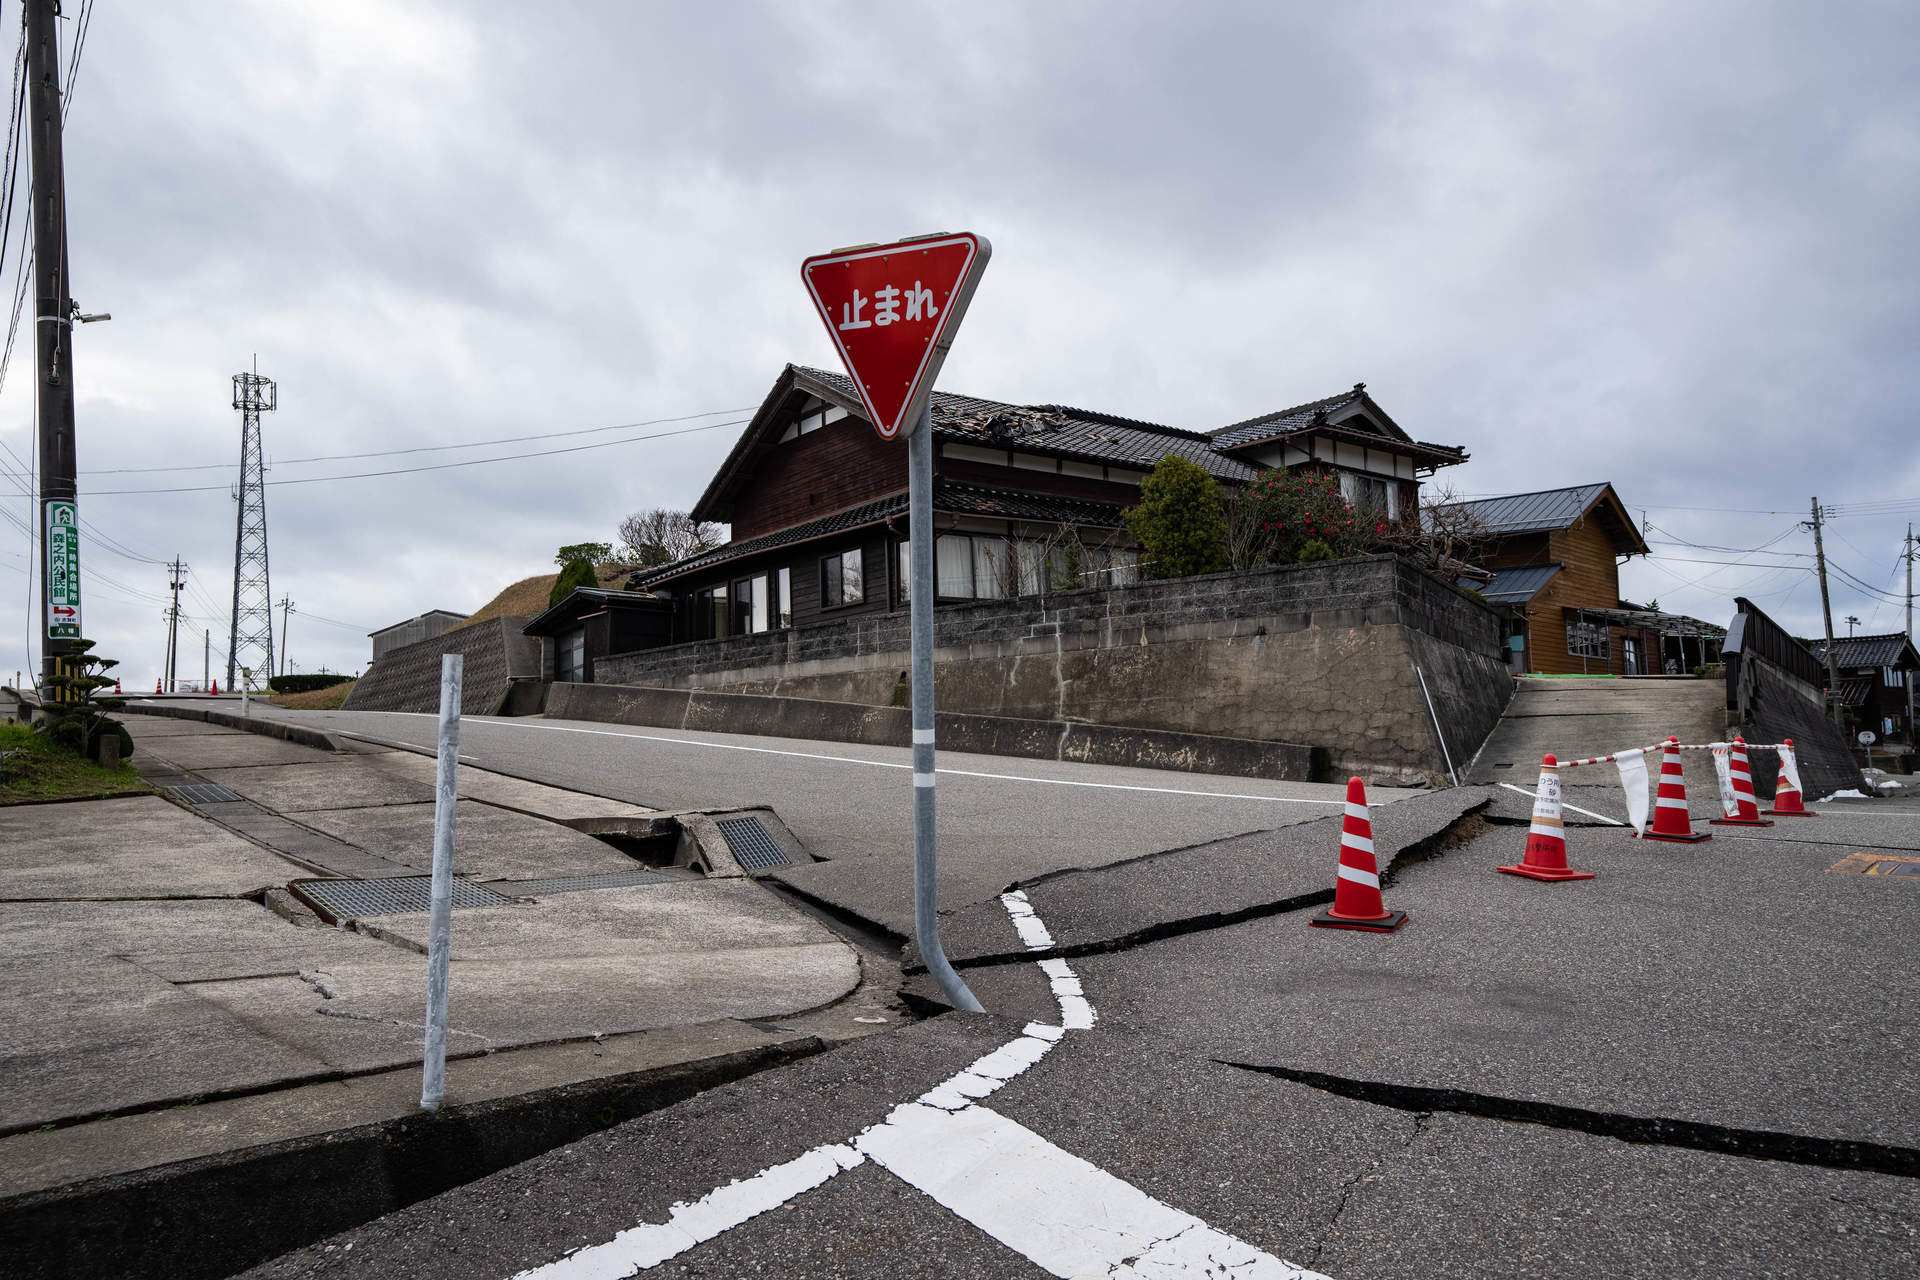 Exteriores recomienda no viajar temporalmente a las regiones afectadas por el terremoto en Japón